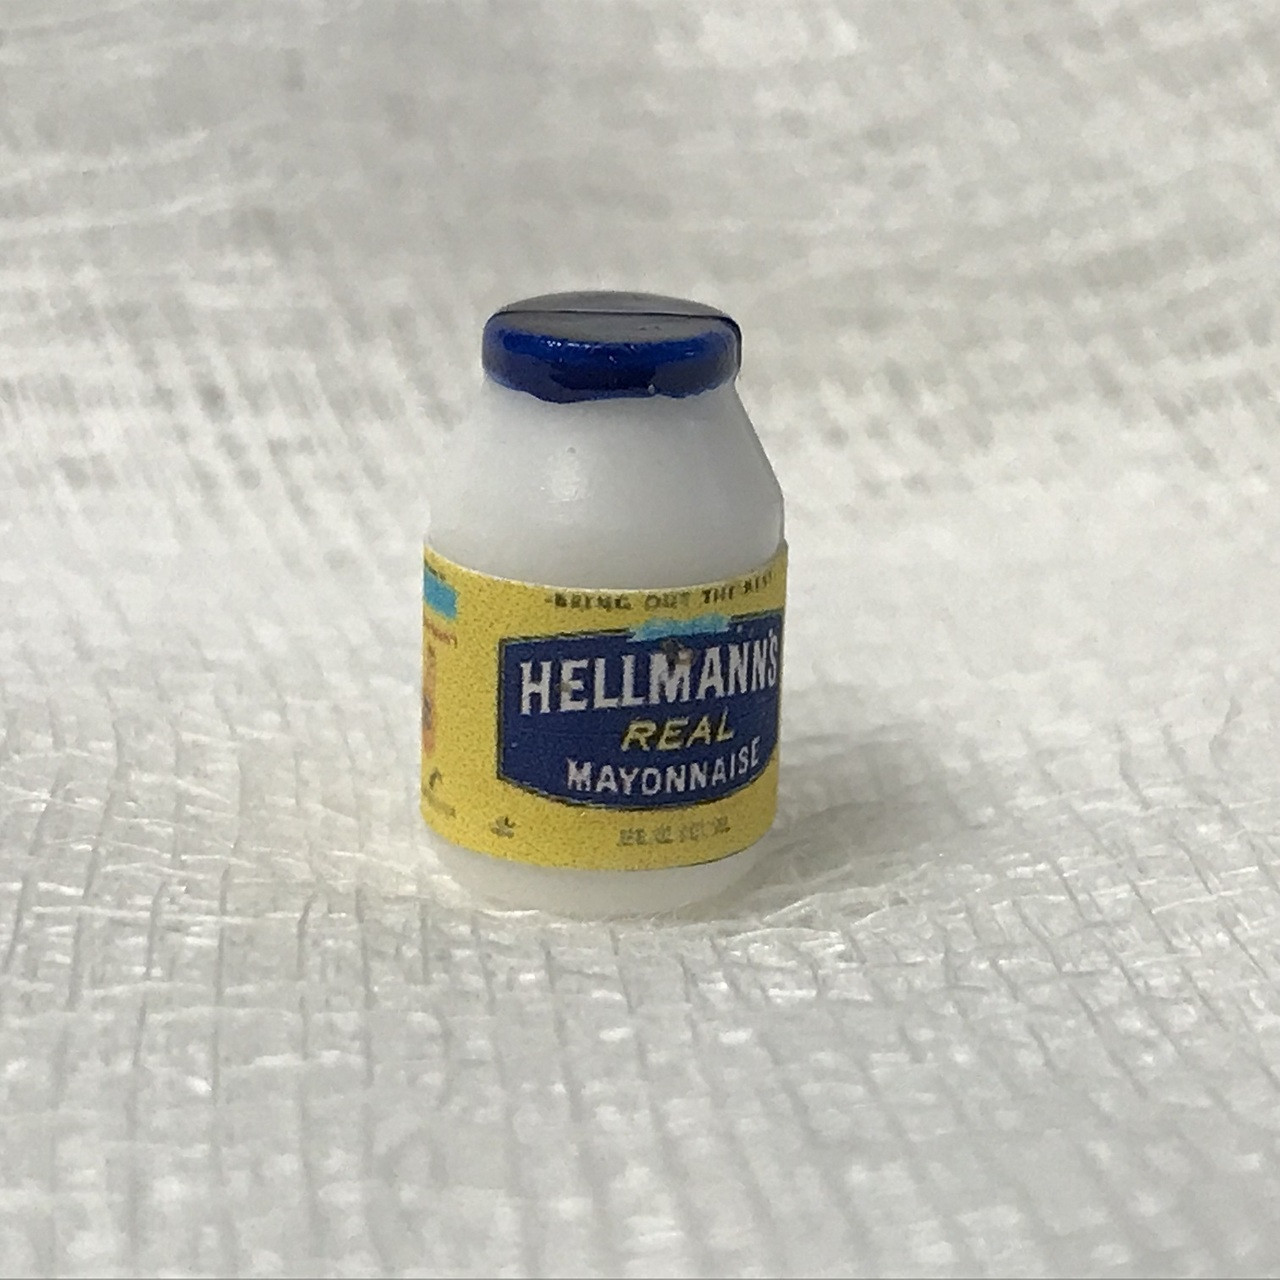 Dollhouse Miniature Hellmann's Mayonnaise (HR54001)